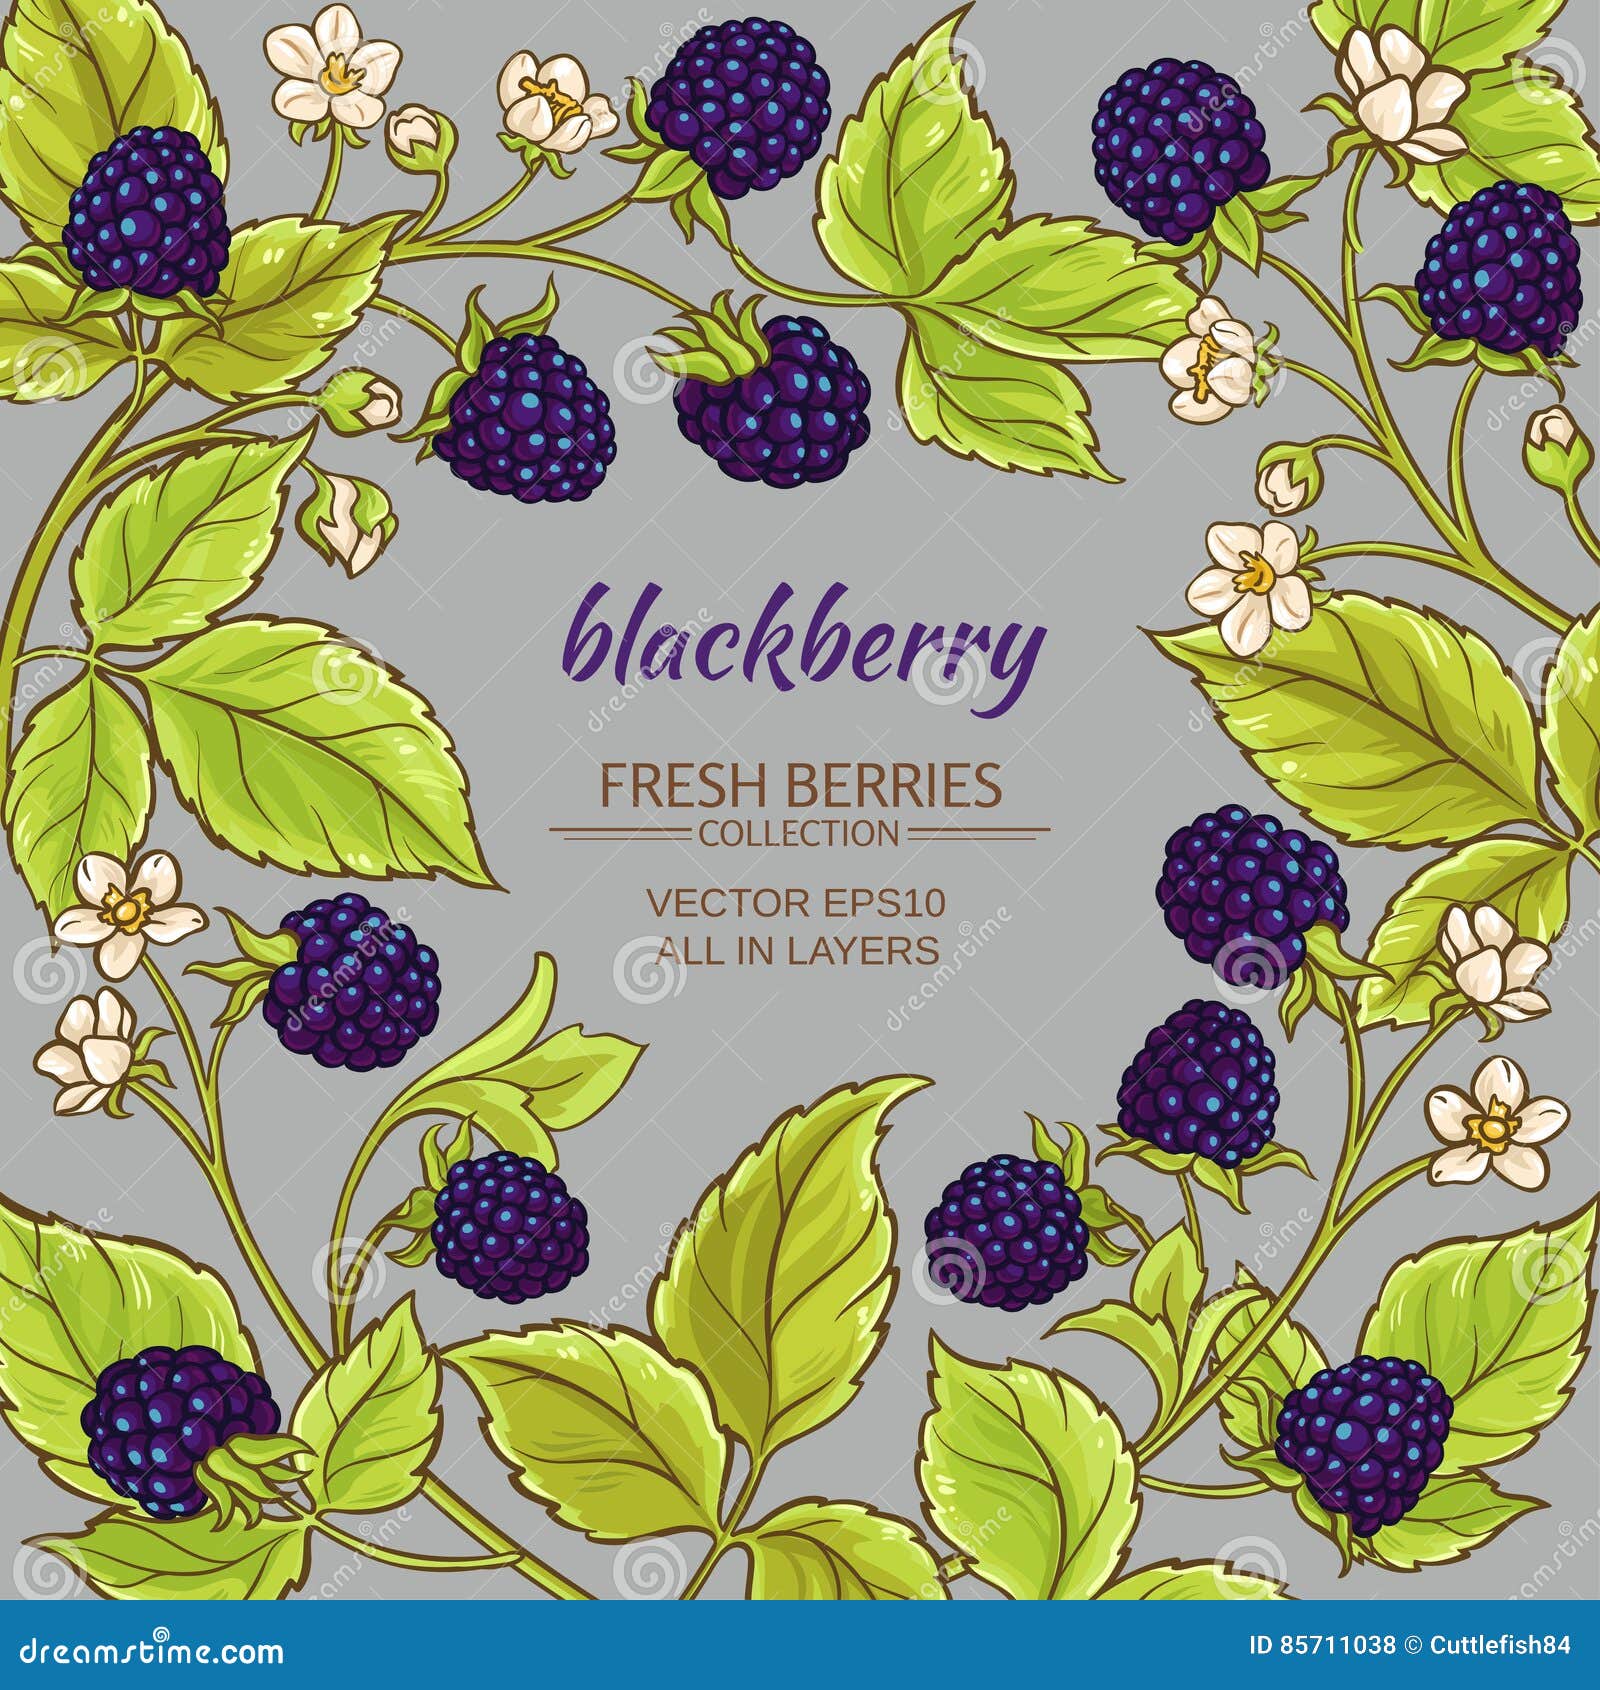 Blackberry vector frame stock vector. Illustration of dessert - 85711038